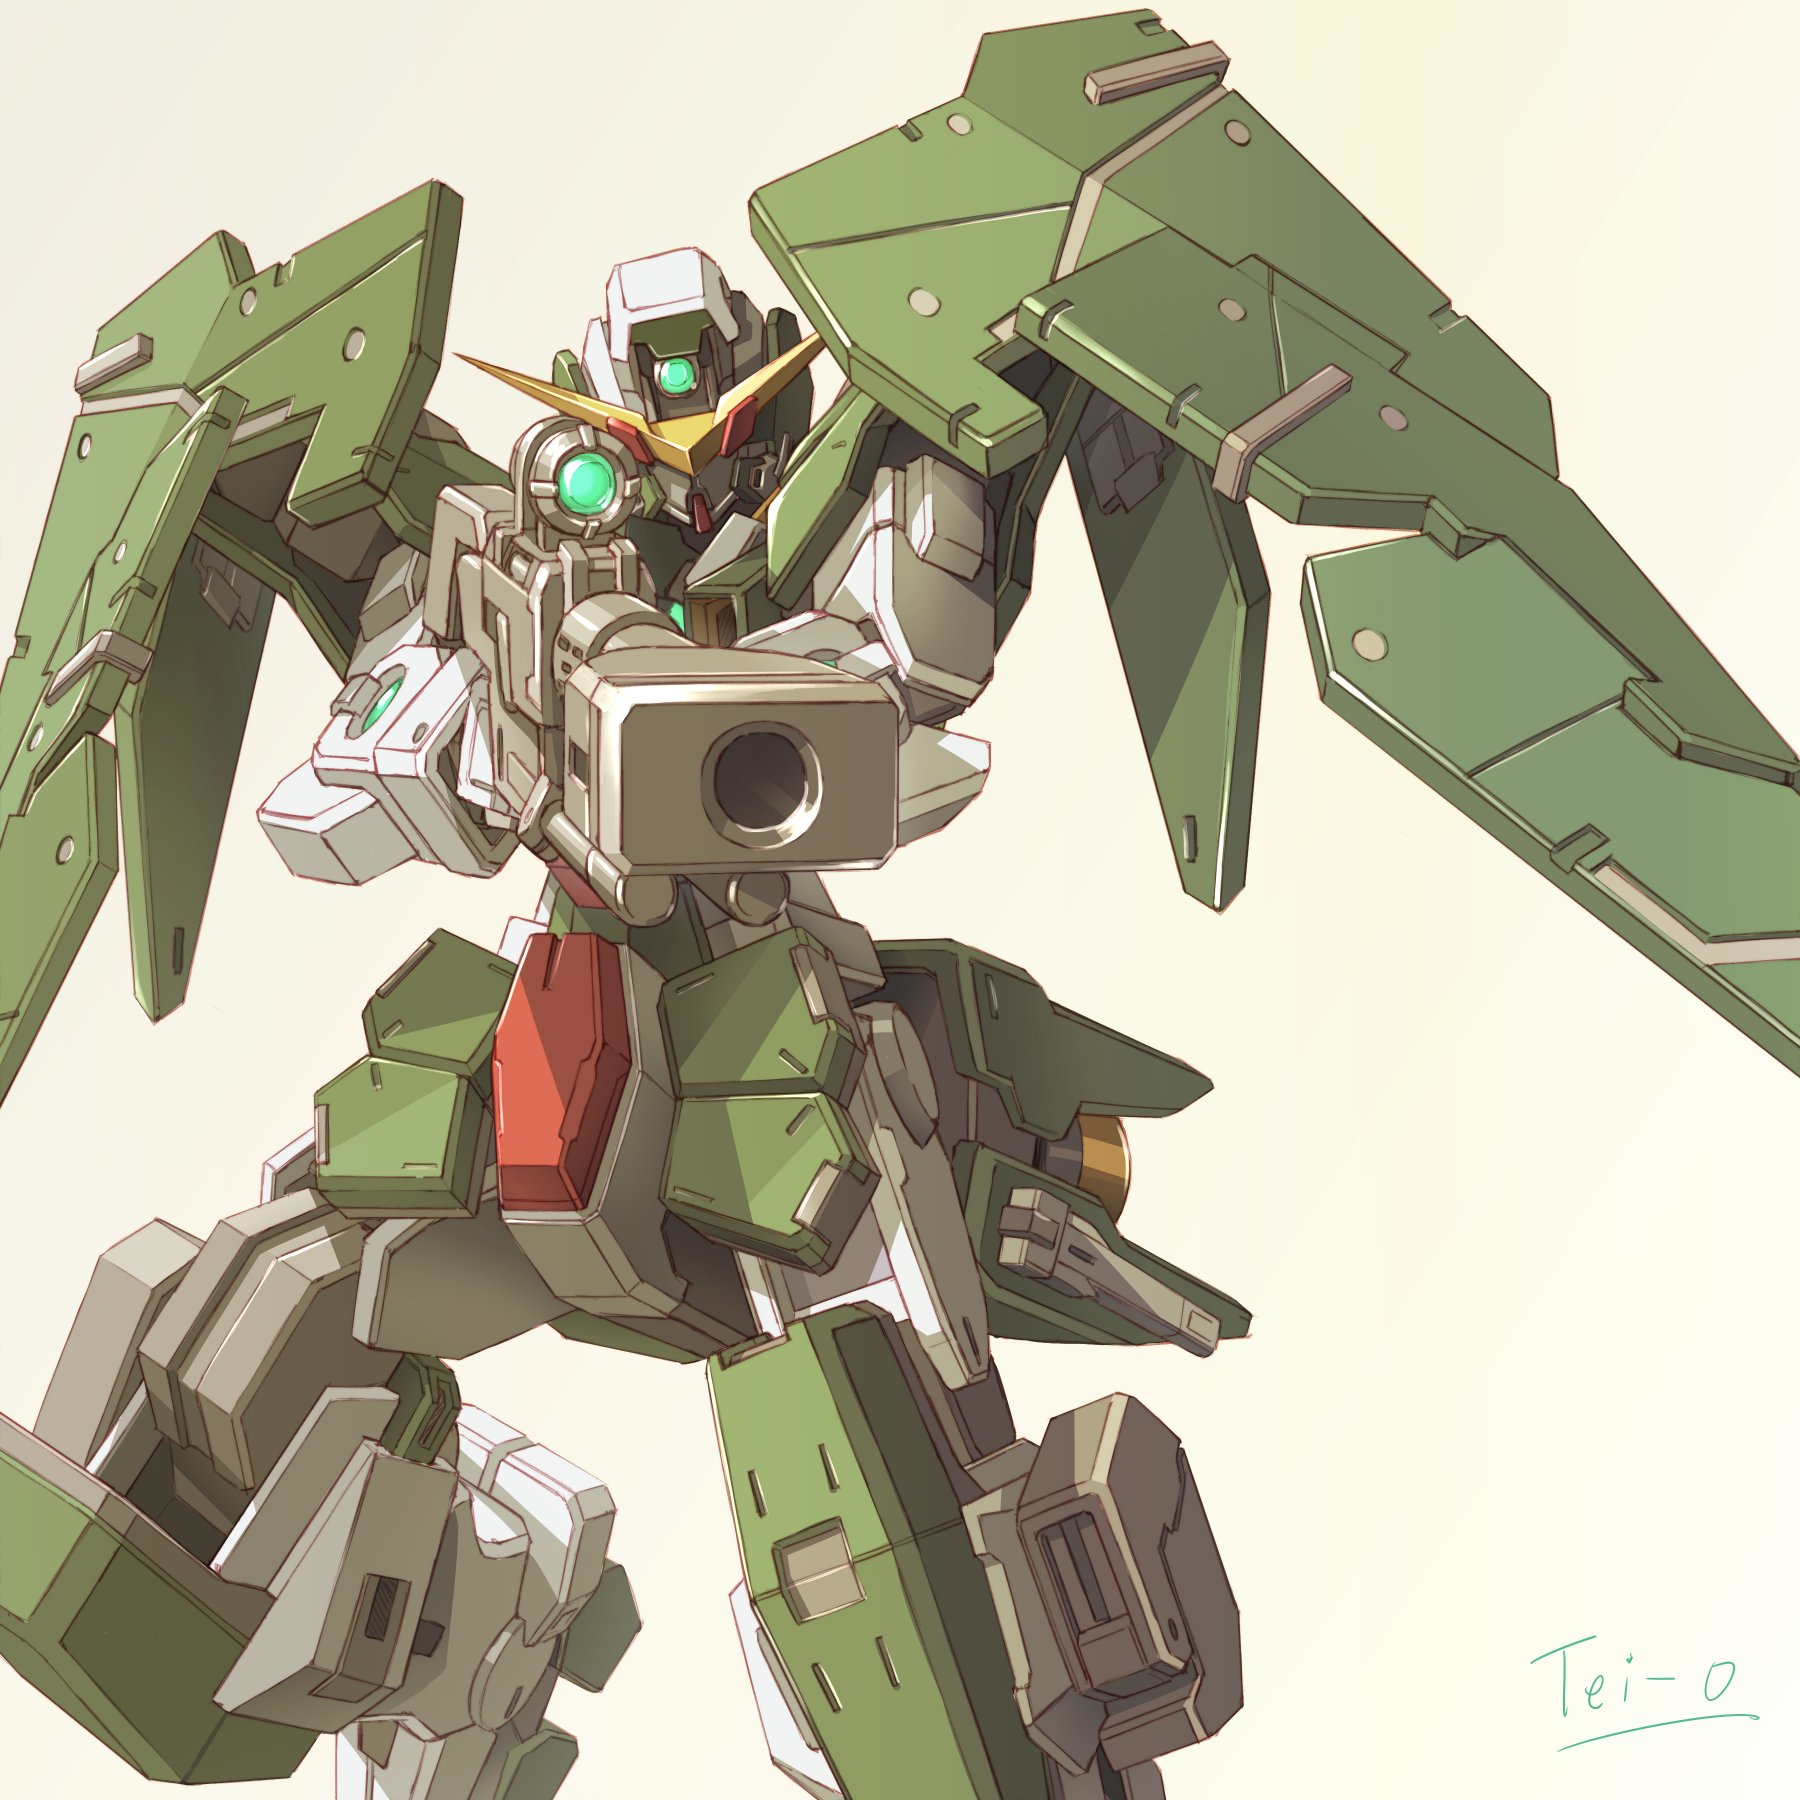 Anime 1800x1800 Gundam Dynames anime mechs Super Robot Taisen Mobile Suit Gundam 00 Gundam artwork digital art fan art